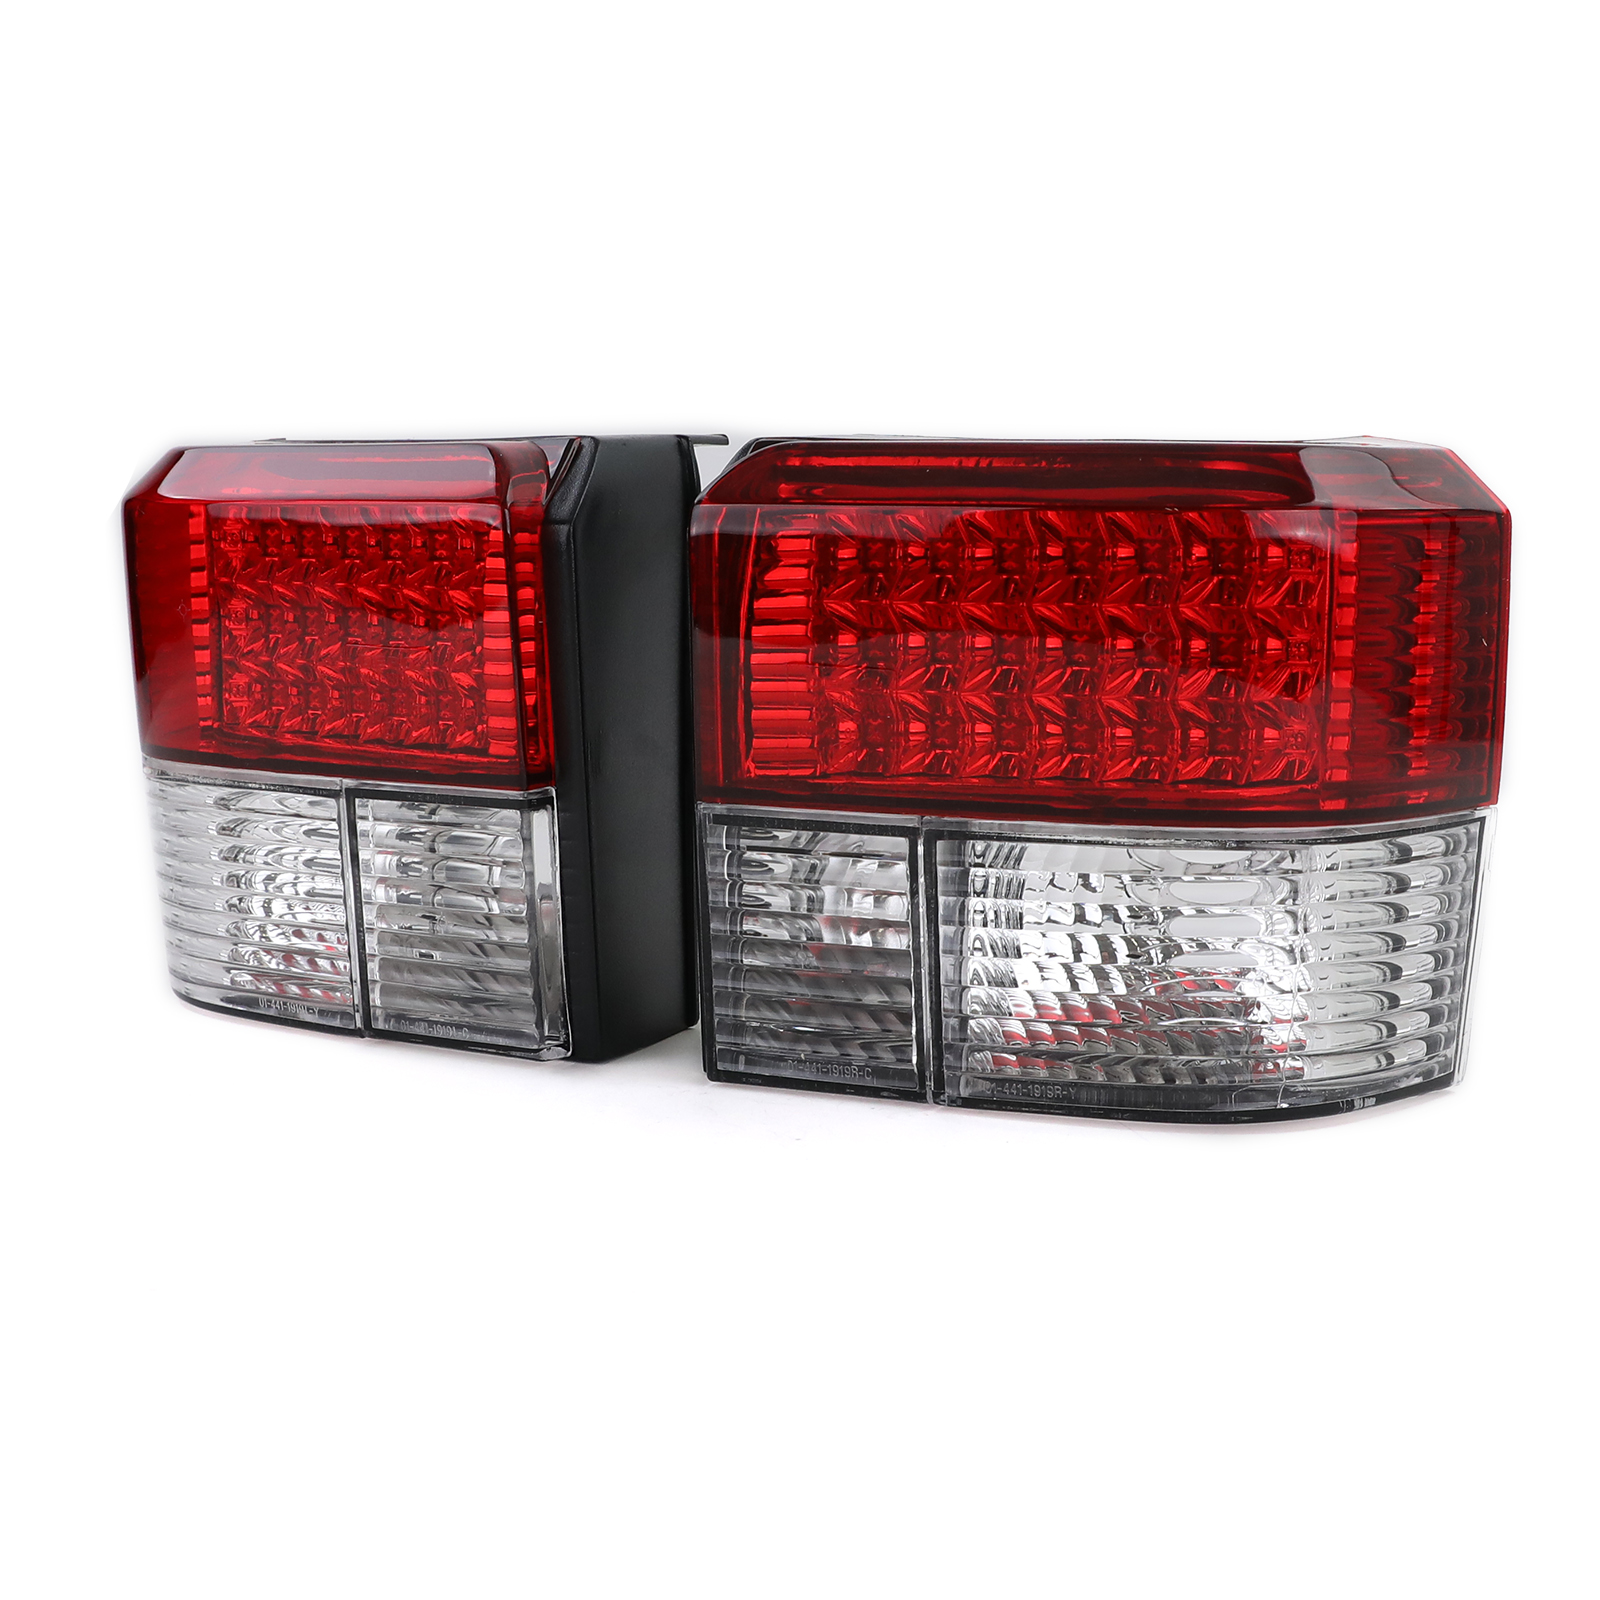 LED Rückleuchten Rot Klar für VW Bus Transporter T4 90-03 kaufen